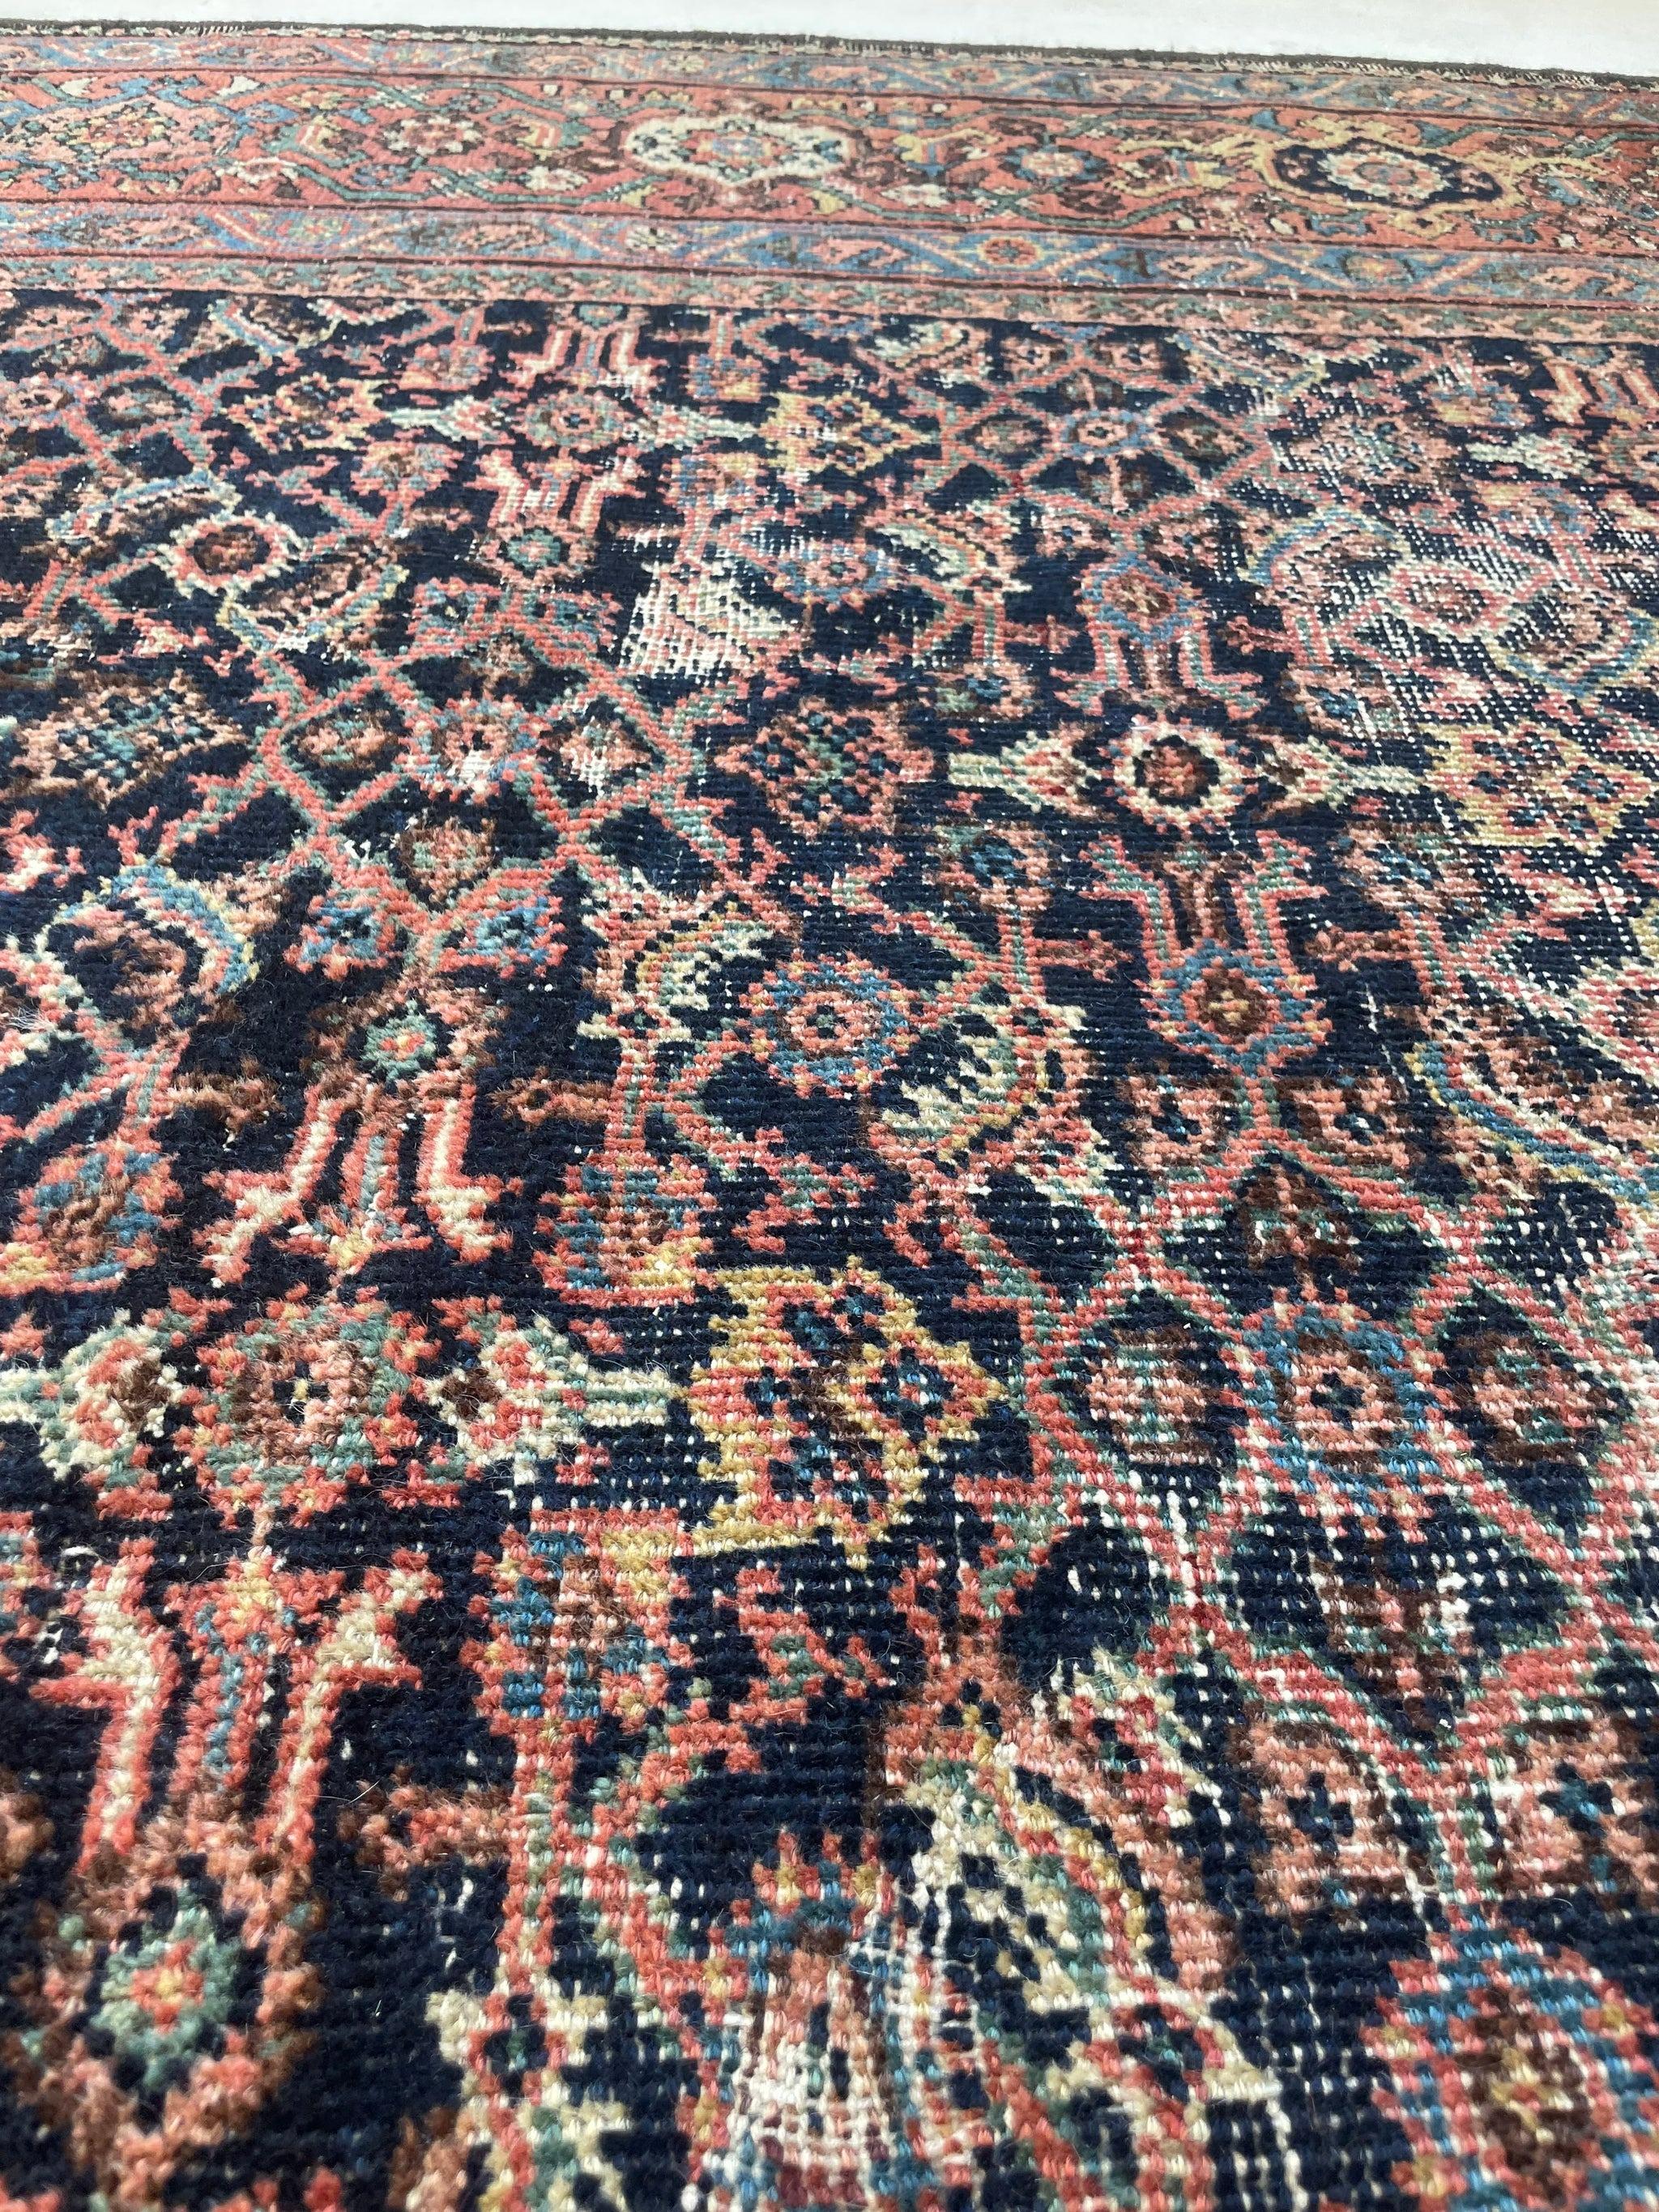 Antique Persian Carpet Rug in Deep Old-World Indigo, circa 1900-1915's For Sale 2